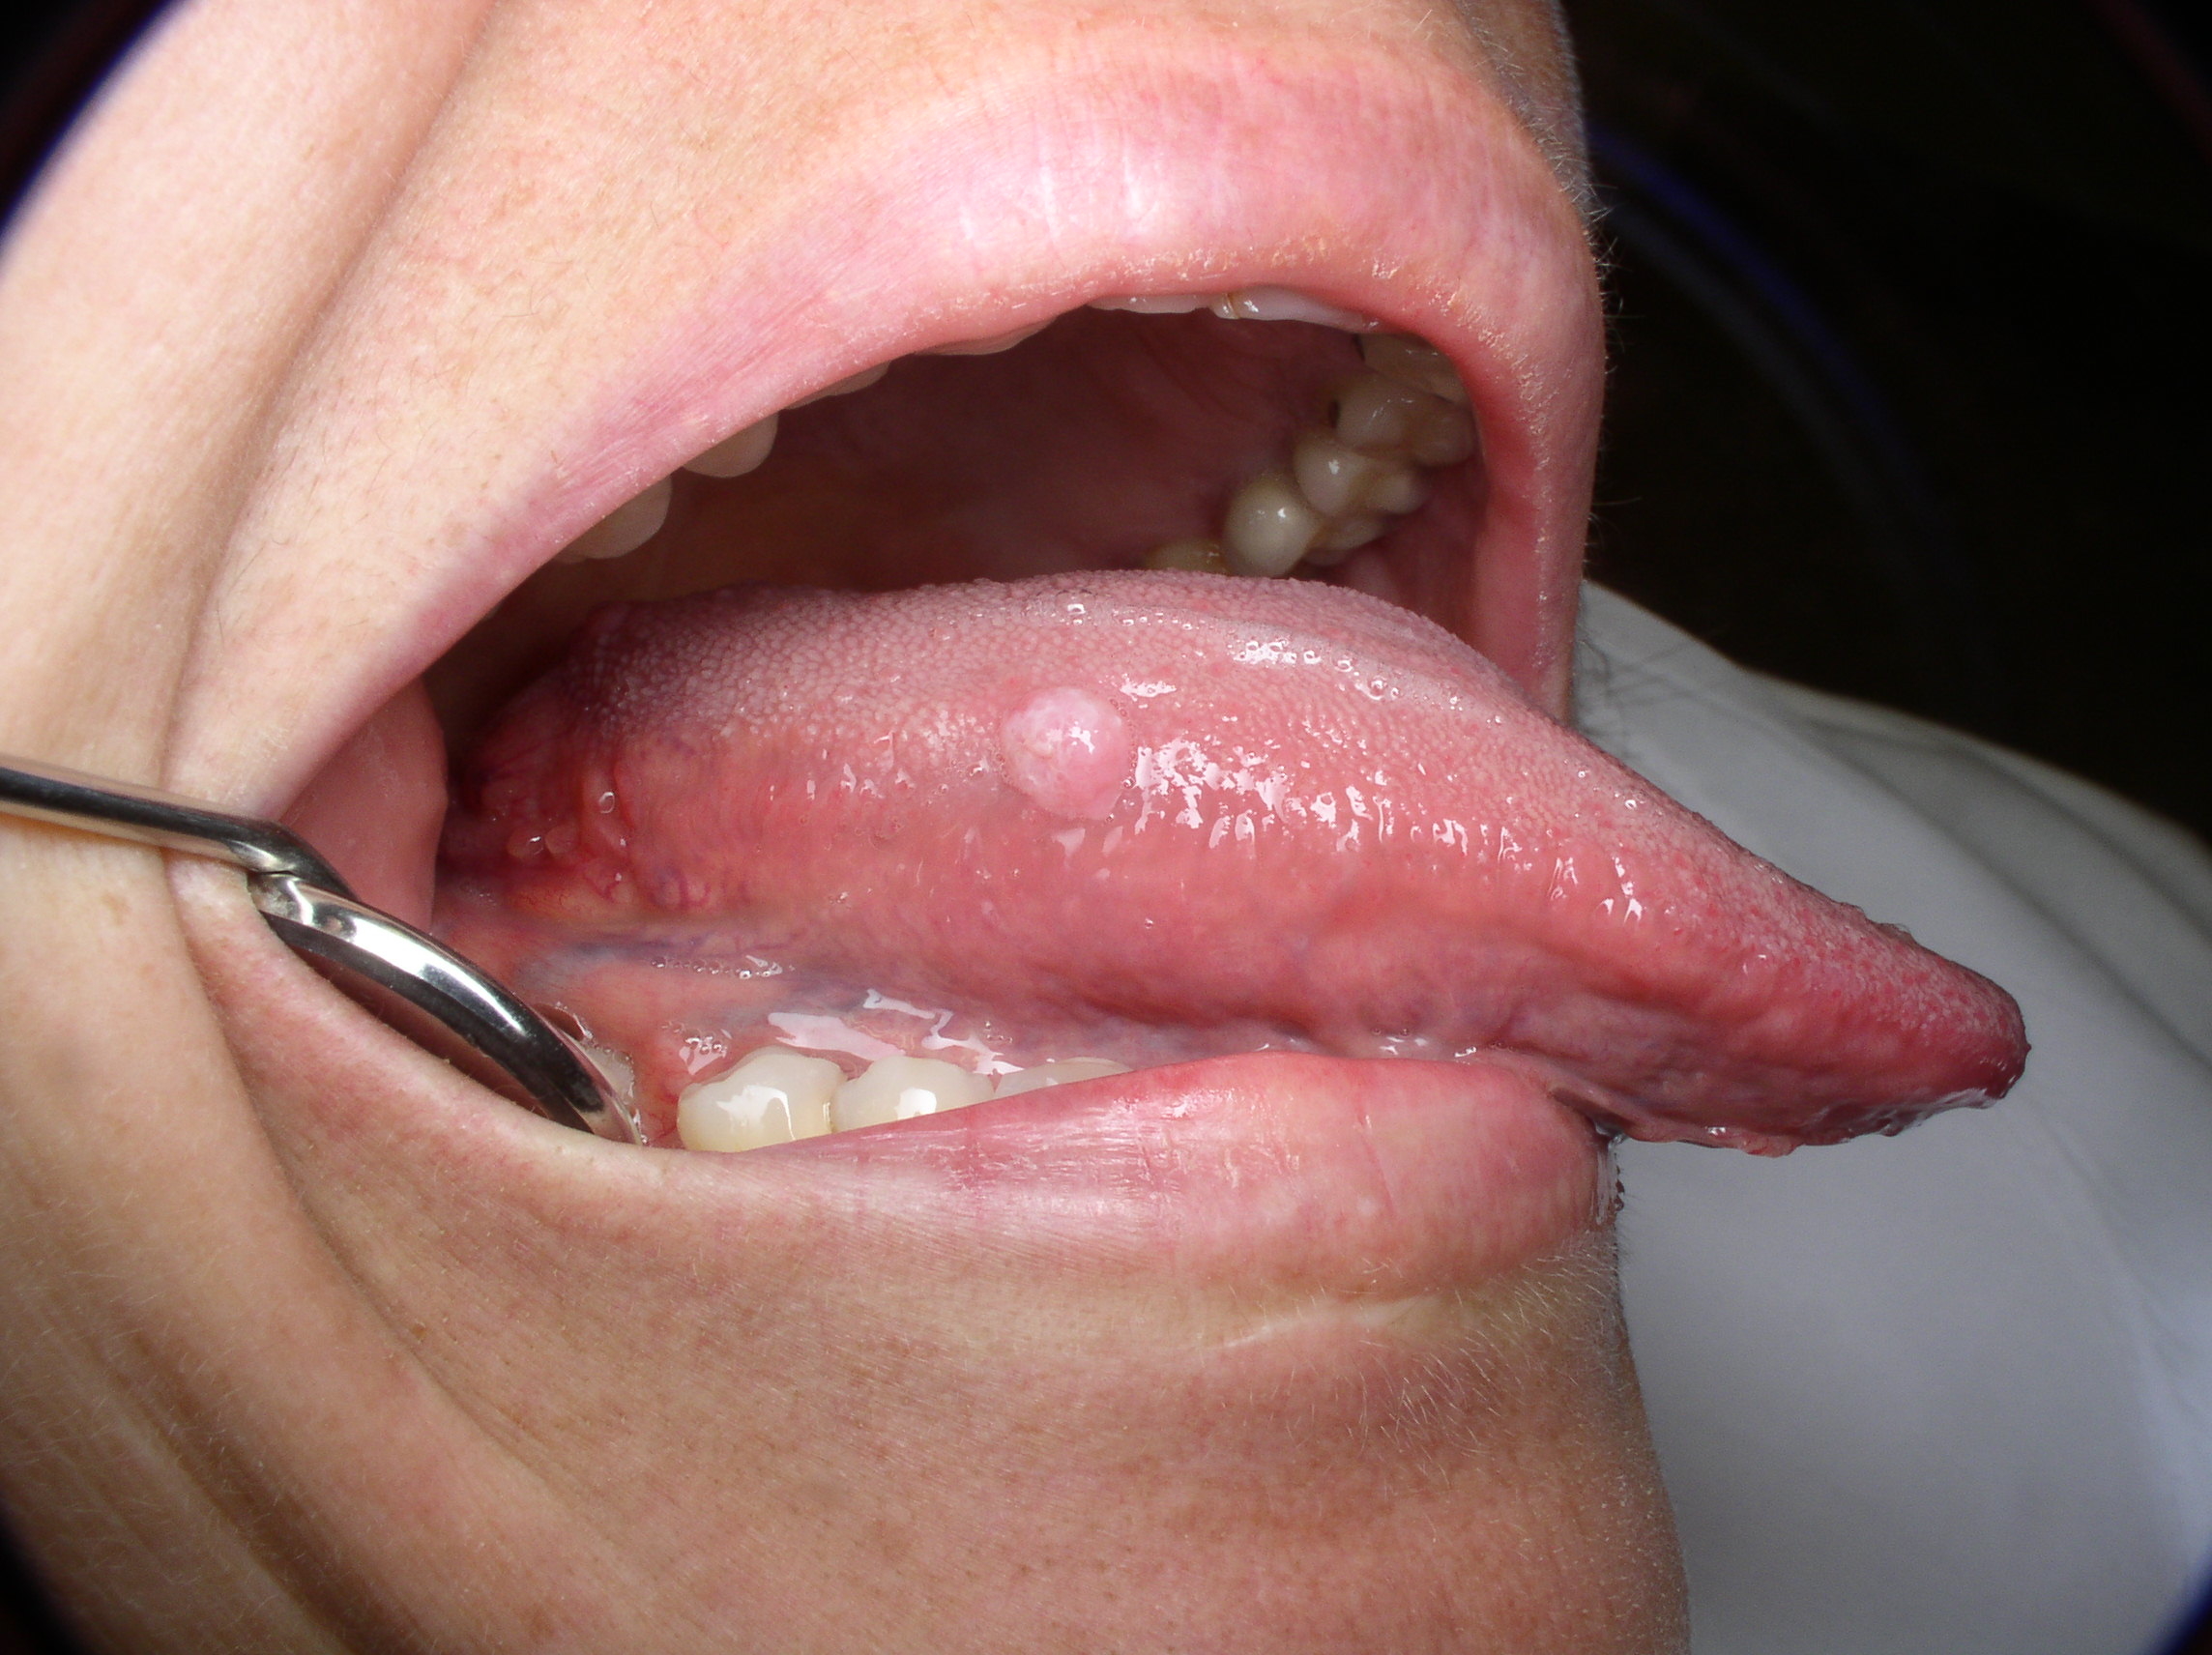 Papillomavirus on the tongue